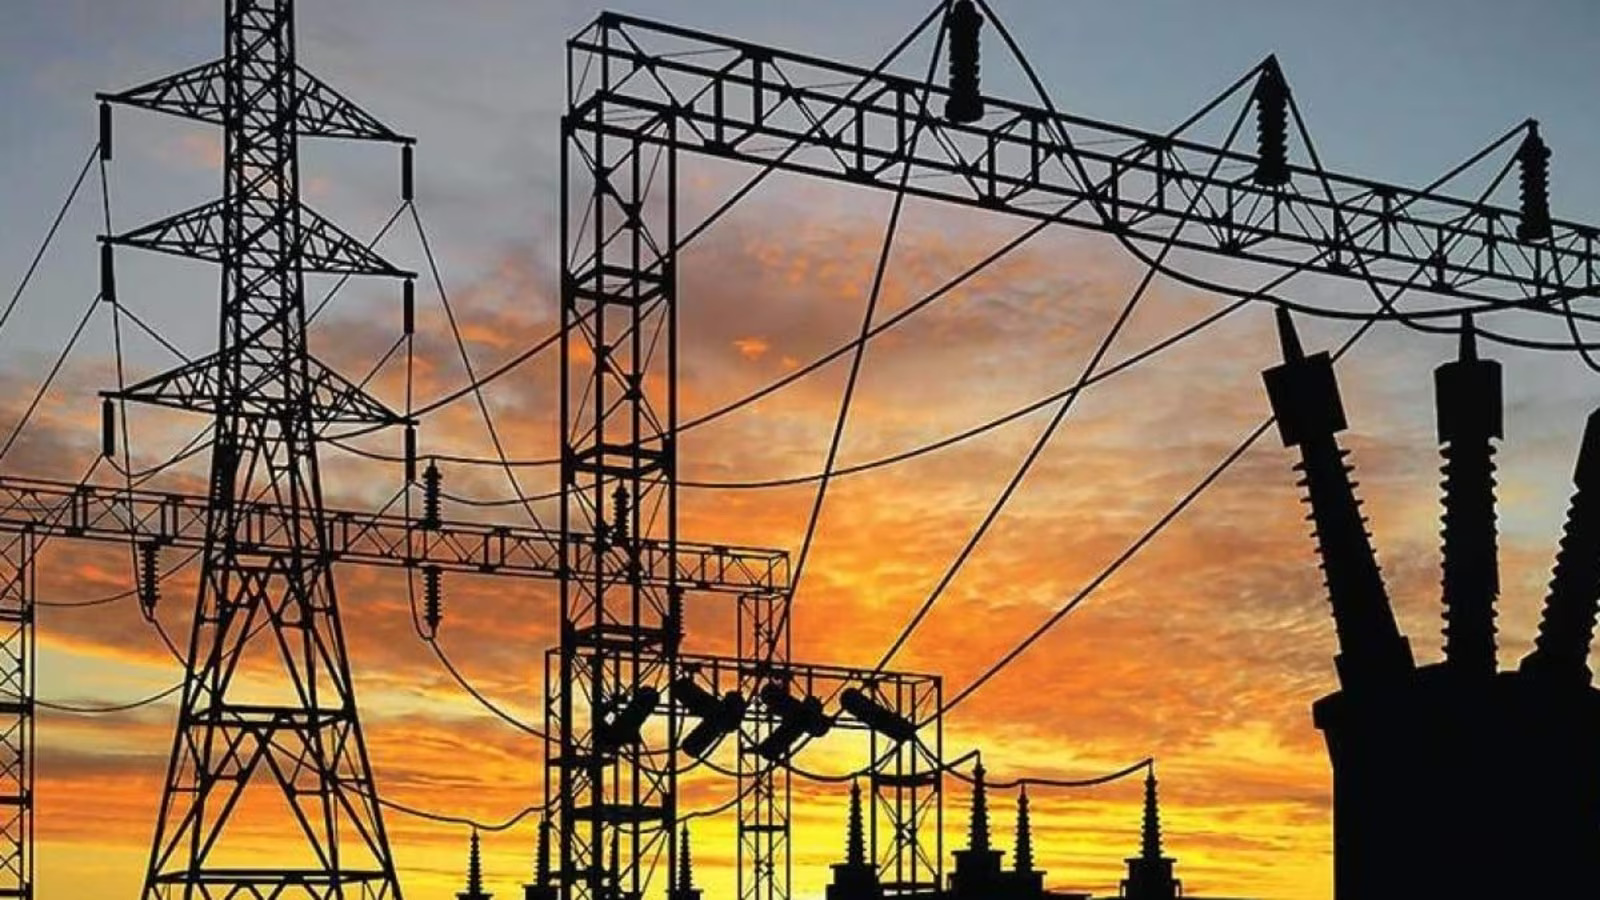 बेंगलुरु में 14 दिसंबर तक निर्धारित बिजली कटौती: प्रभावित क्षेत्र, समय और विवरण